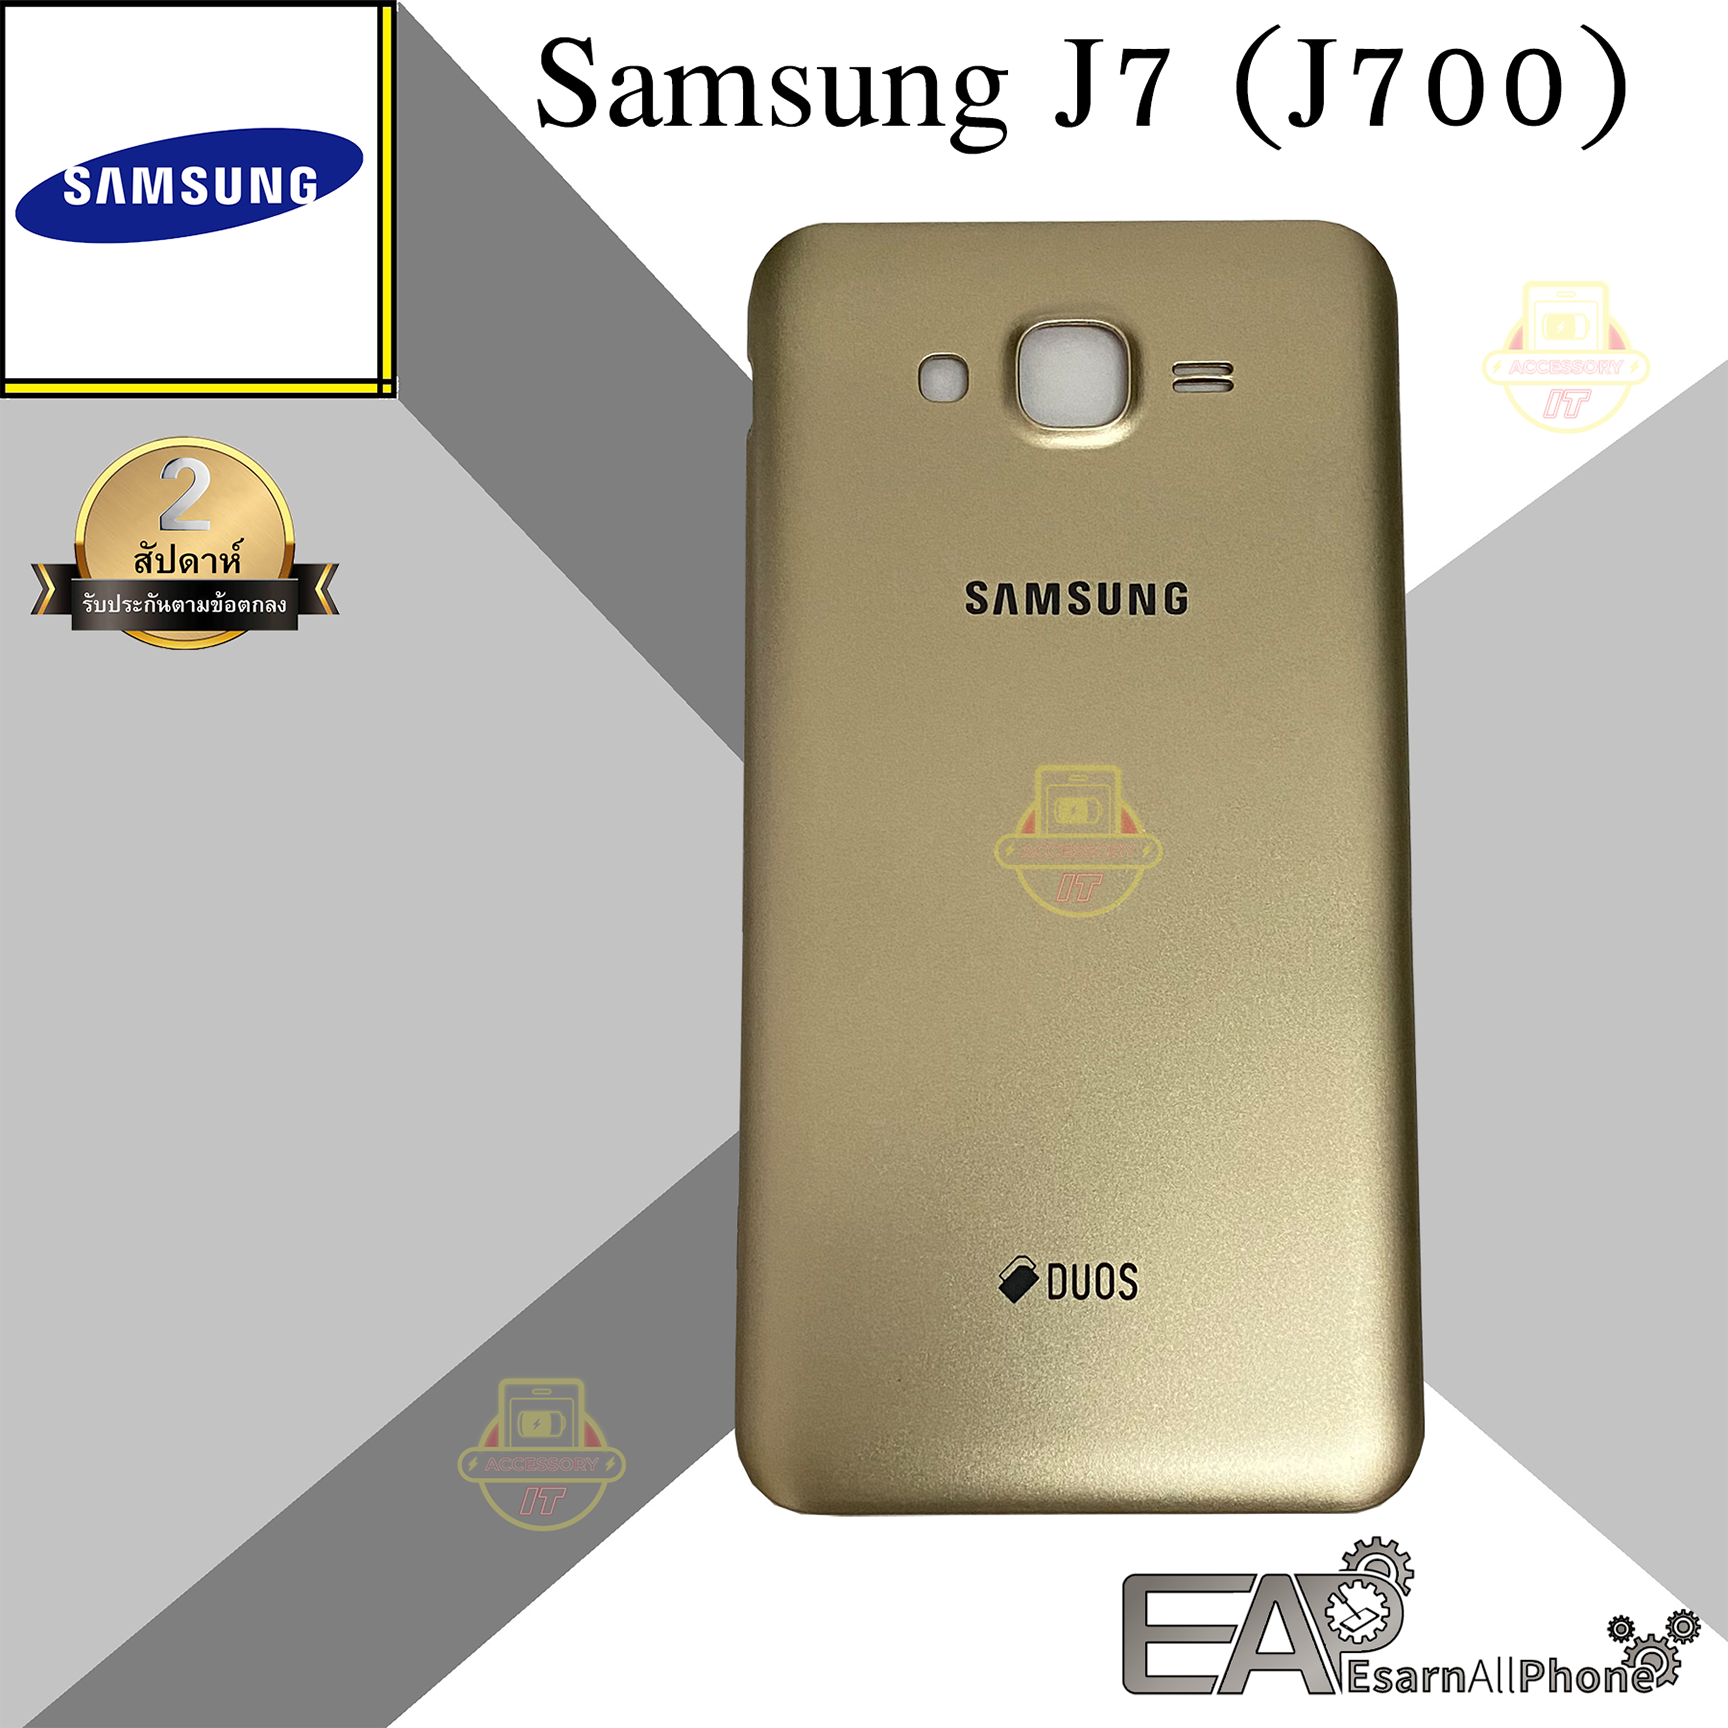 ฝาหลัง Samsung Galaxy J7 (J700)  สี / color ทอง / Goldรูปแบบรุ่นที่ีรองรับ Samsung Galaxy J7